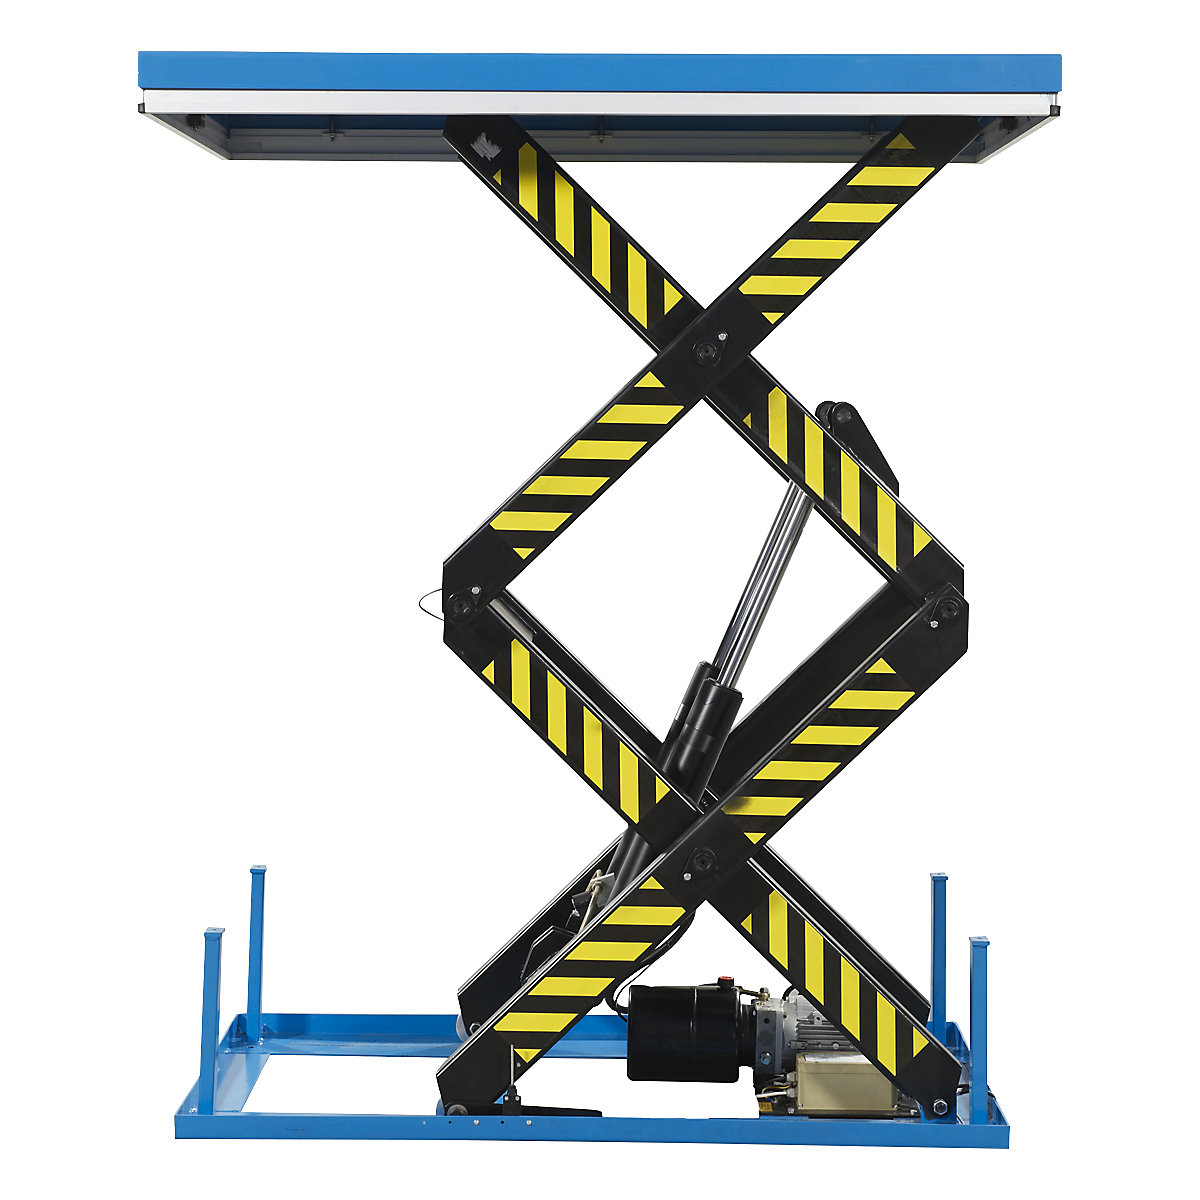 Double scissor lift platform, stationary, max. load 1000 kg, operating voltage 230 V